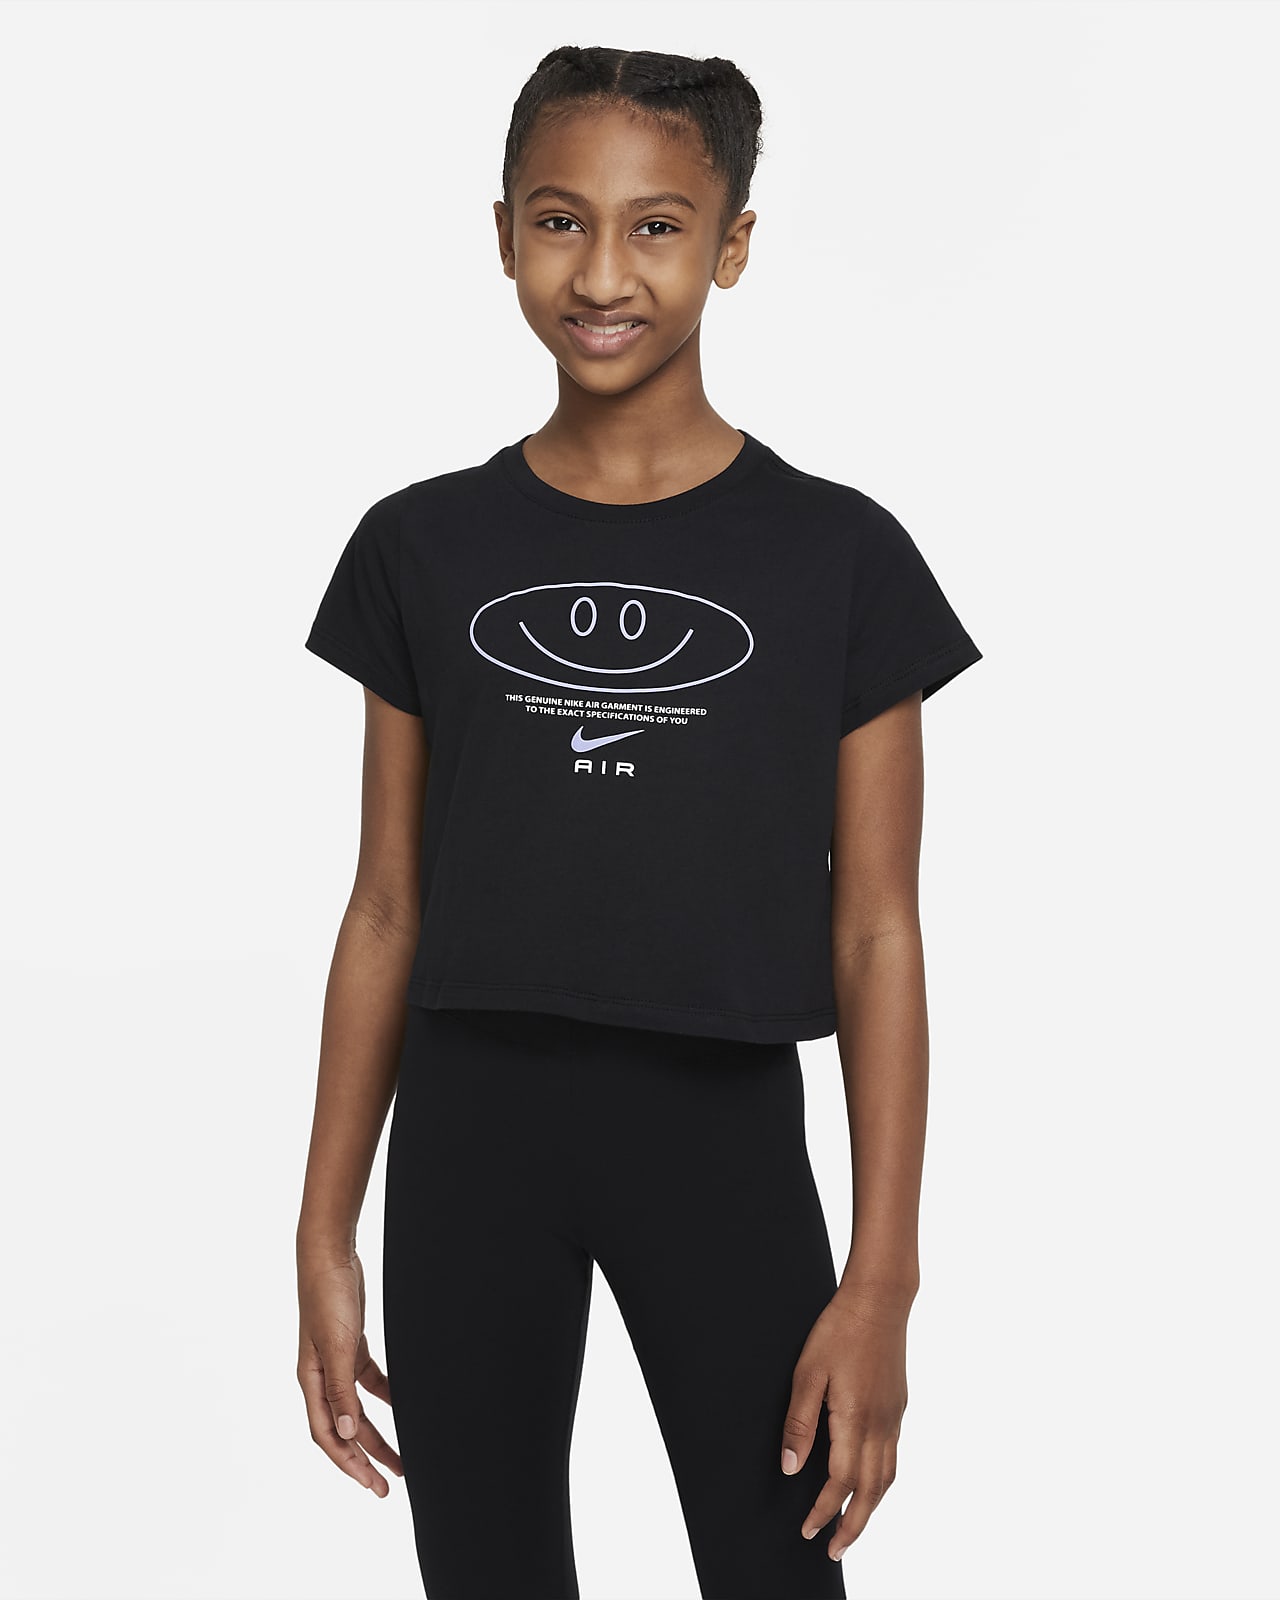 Zkrácené tričko Nike Air pro větší děti (dívky)